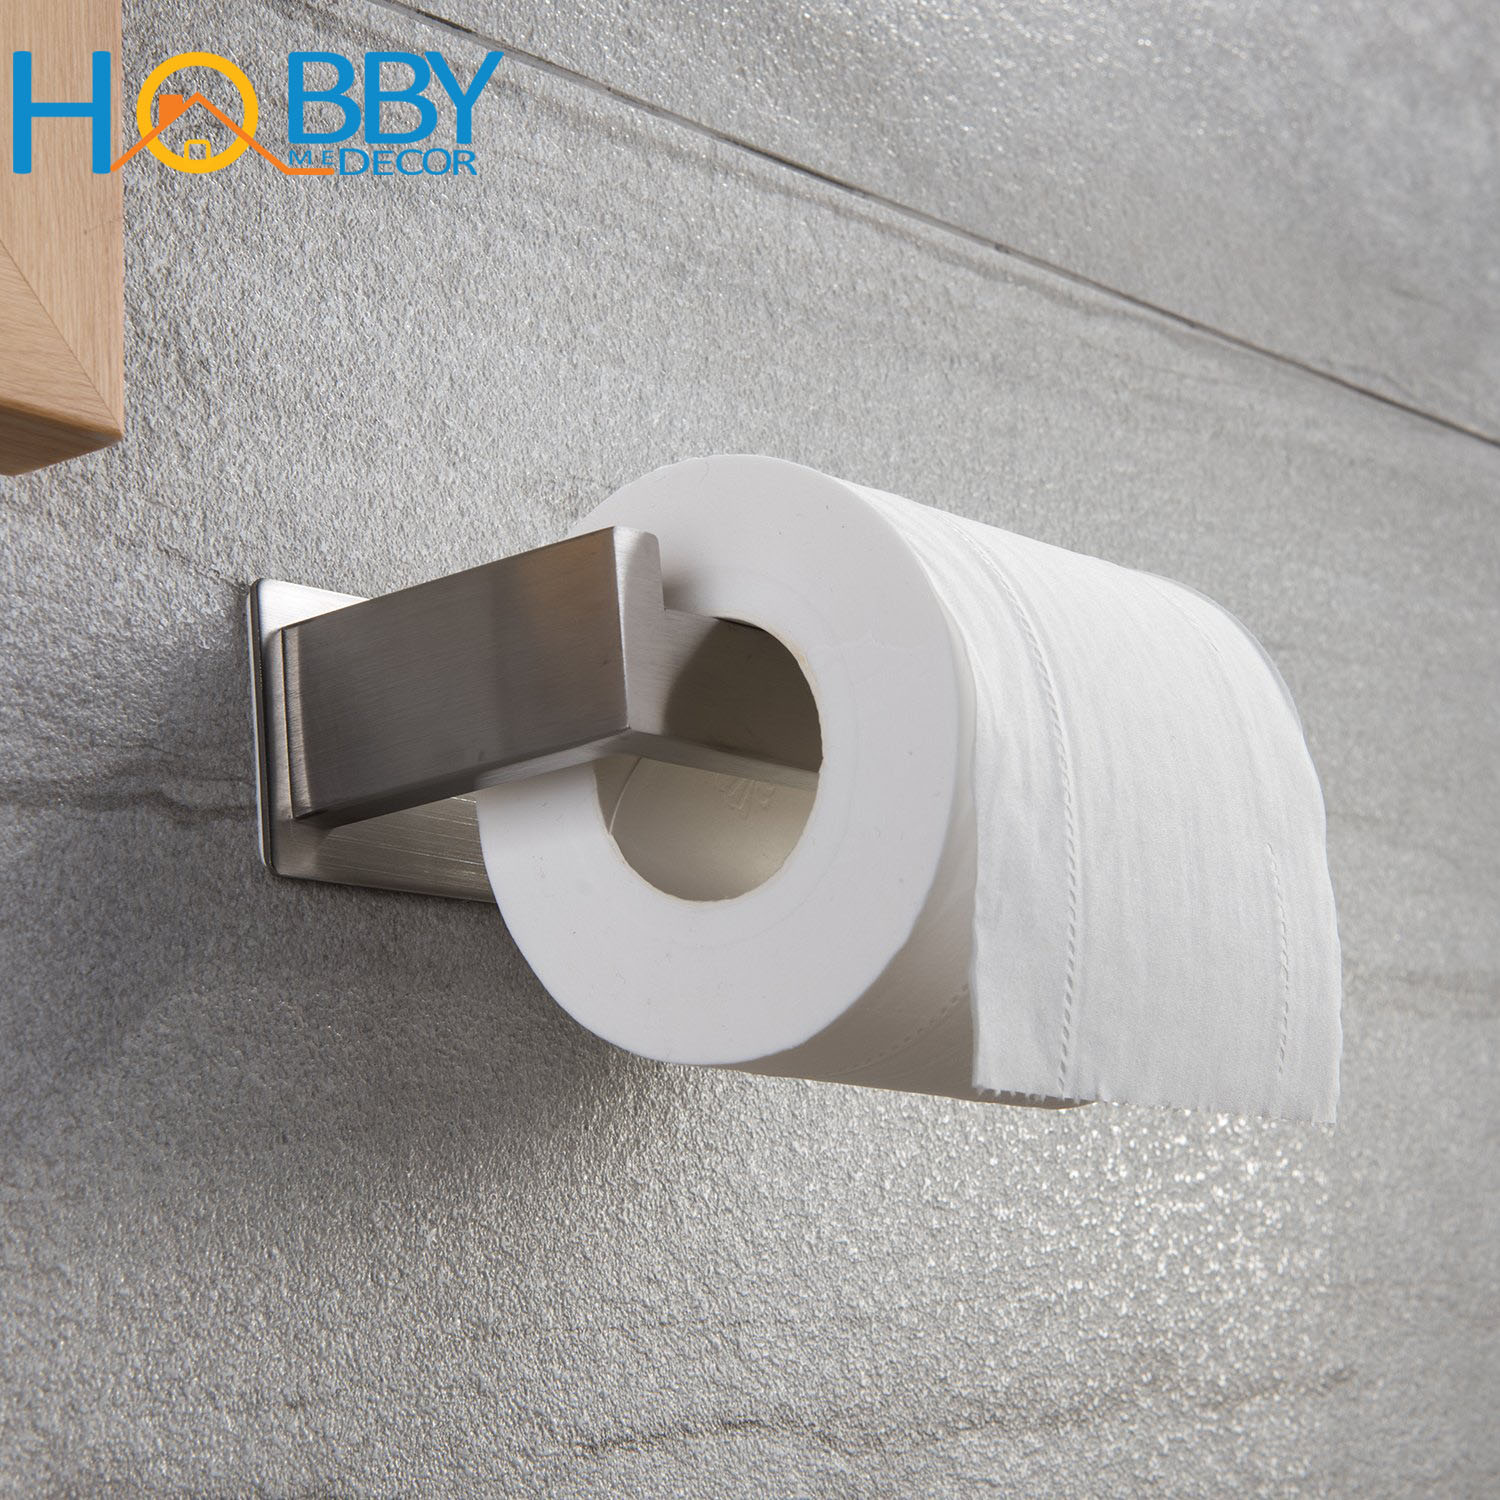 Kệ để cuộn giấy vệ sinh dán tường phòng tắm inox 304 Hobby Home Decor G12 kèm keo dán tường